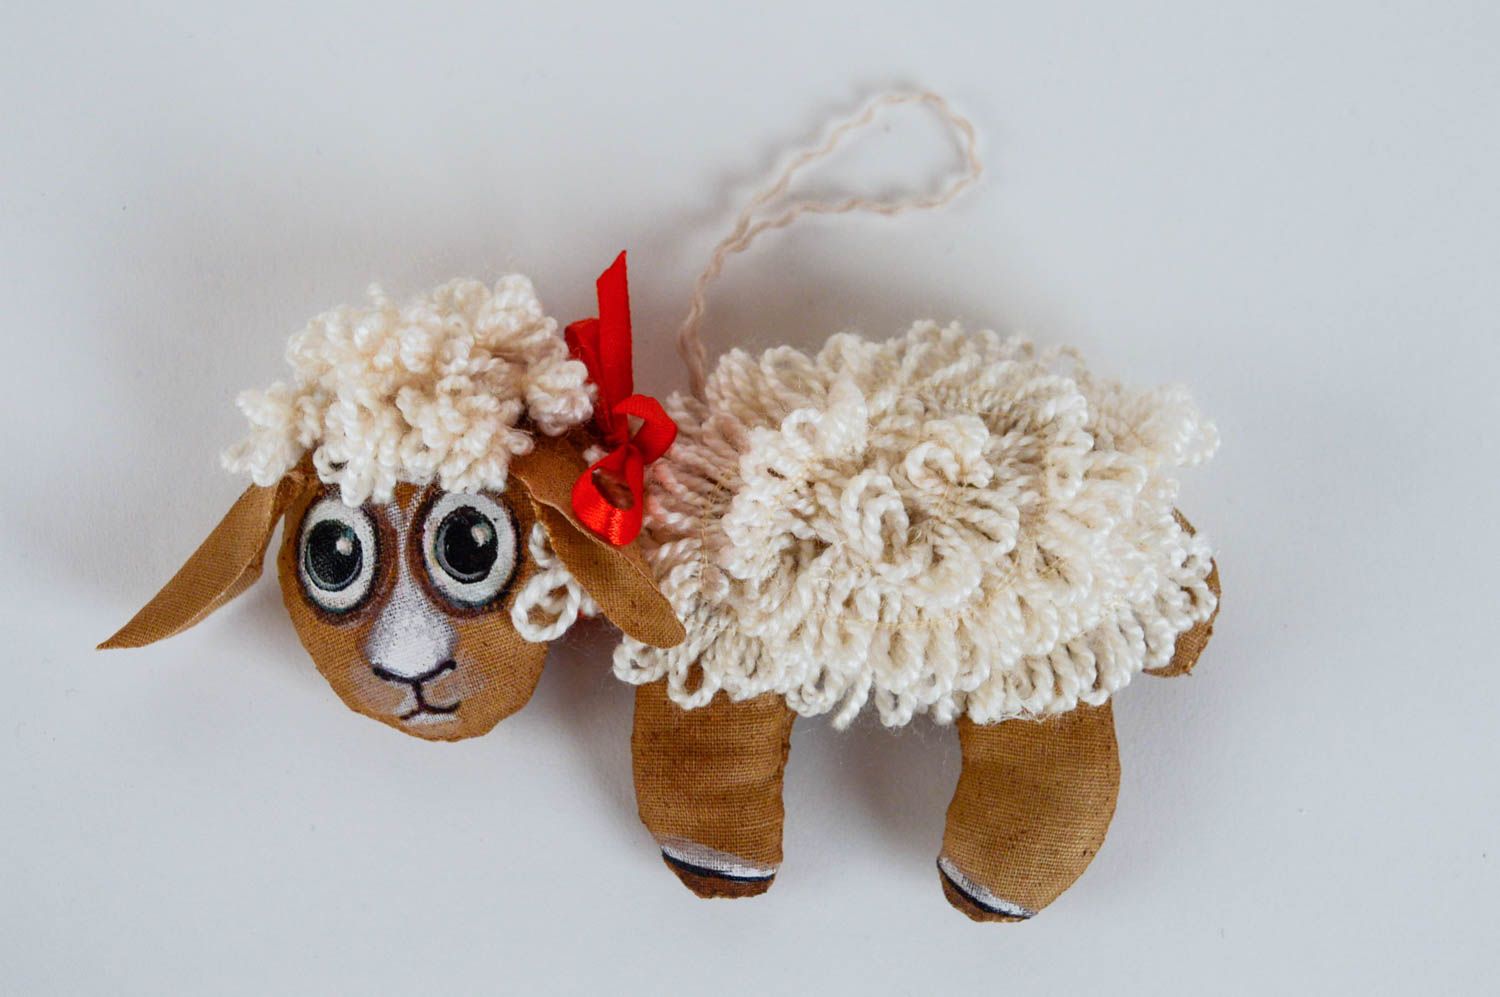 Мягкая игрушка овечка для интерьера дома ароматизированная расписная хенд мейд фото 1